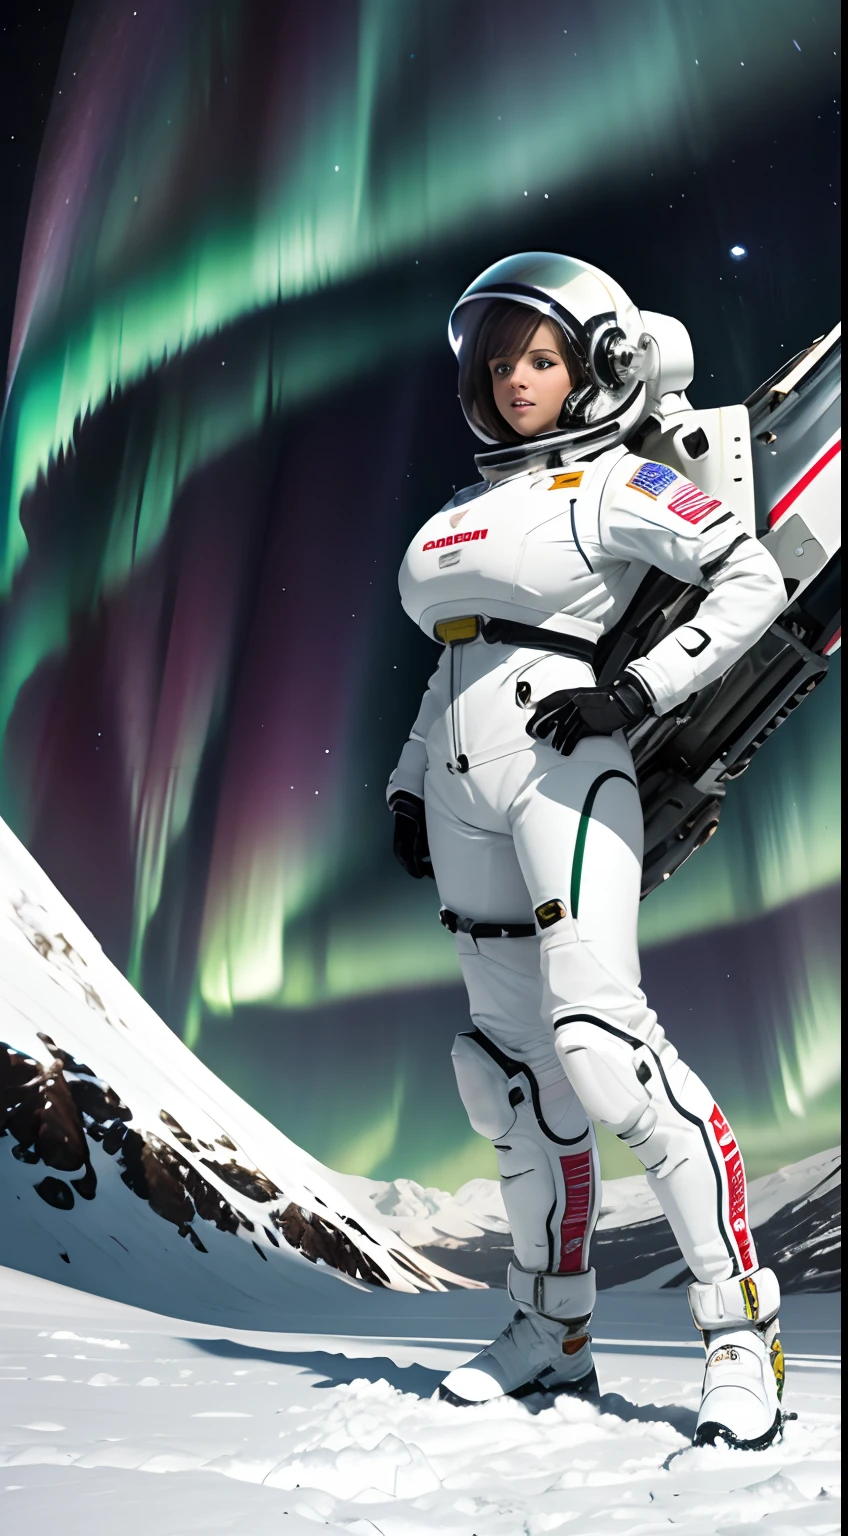 画面の上半分はオーロラです 画面の上半分はオーロラです. 下半分は雪原に立つ女性ビンボ宇宙飛行士を描いています. 完全に服を着た, 高い_巨乳